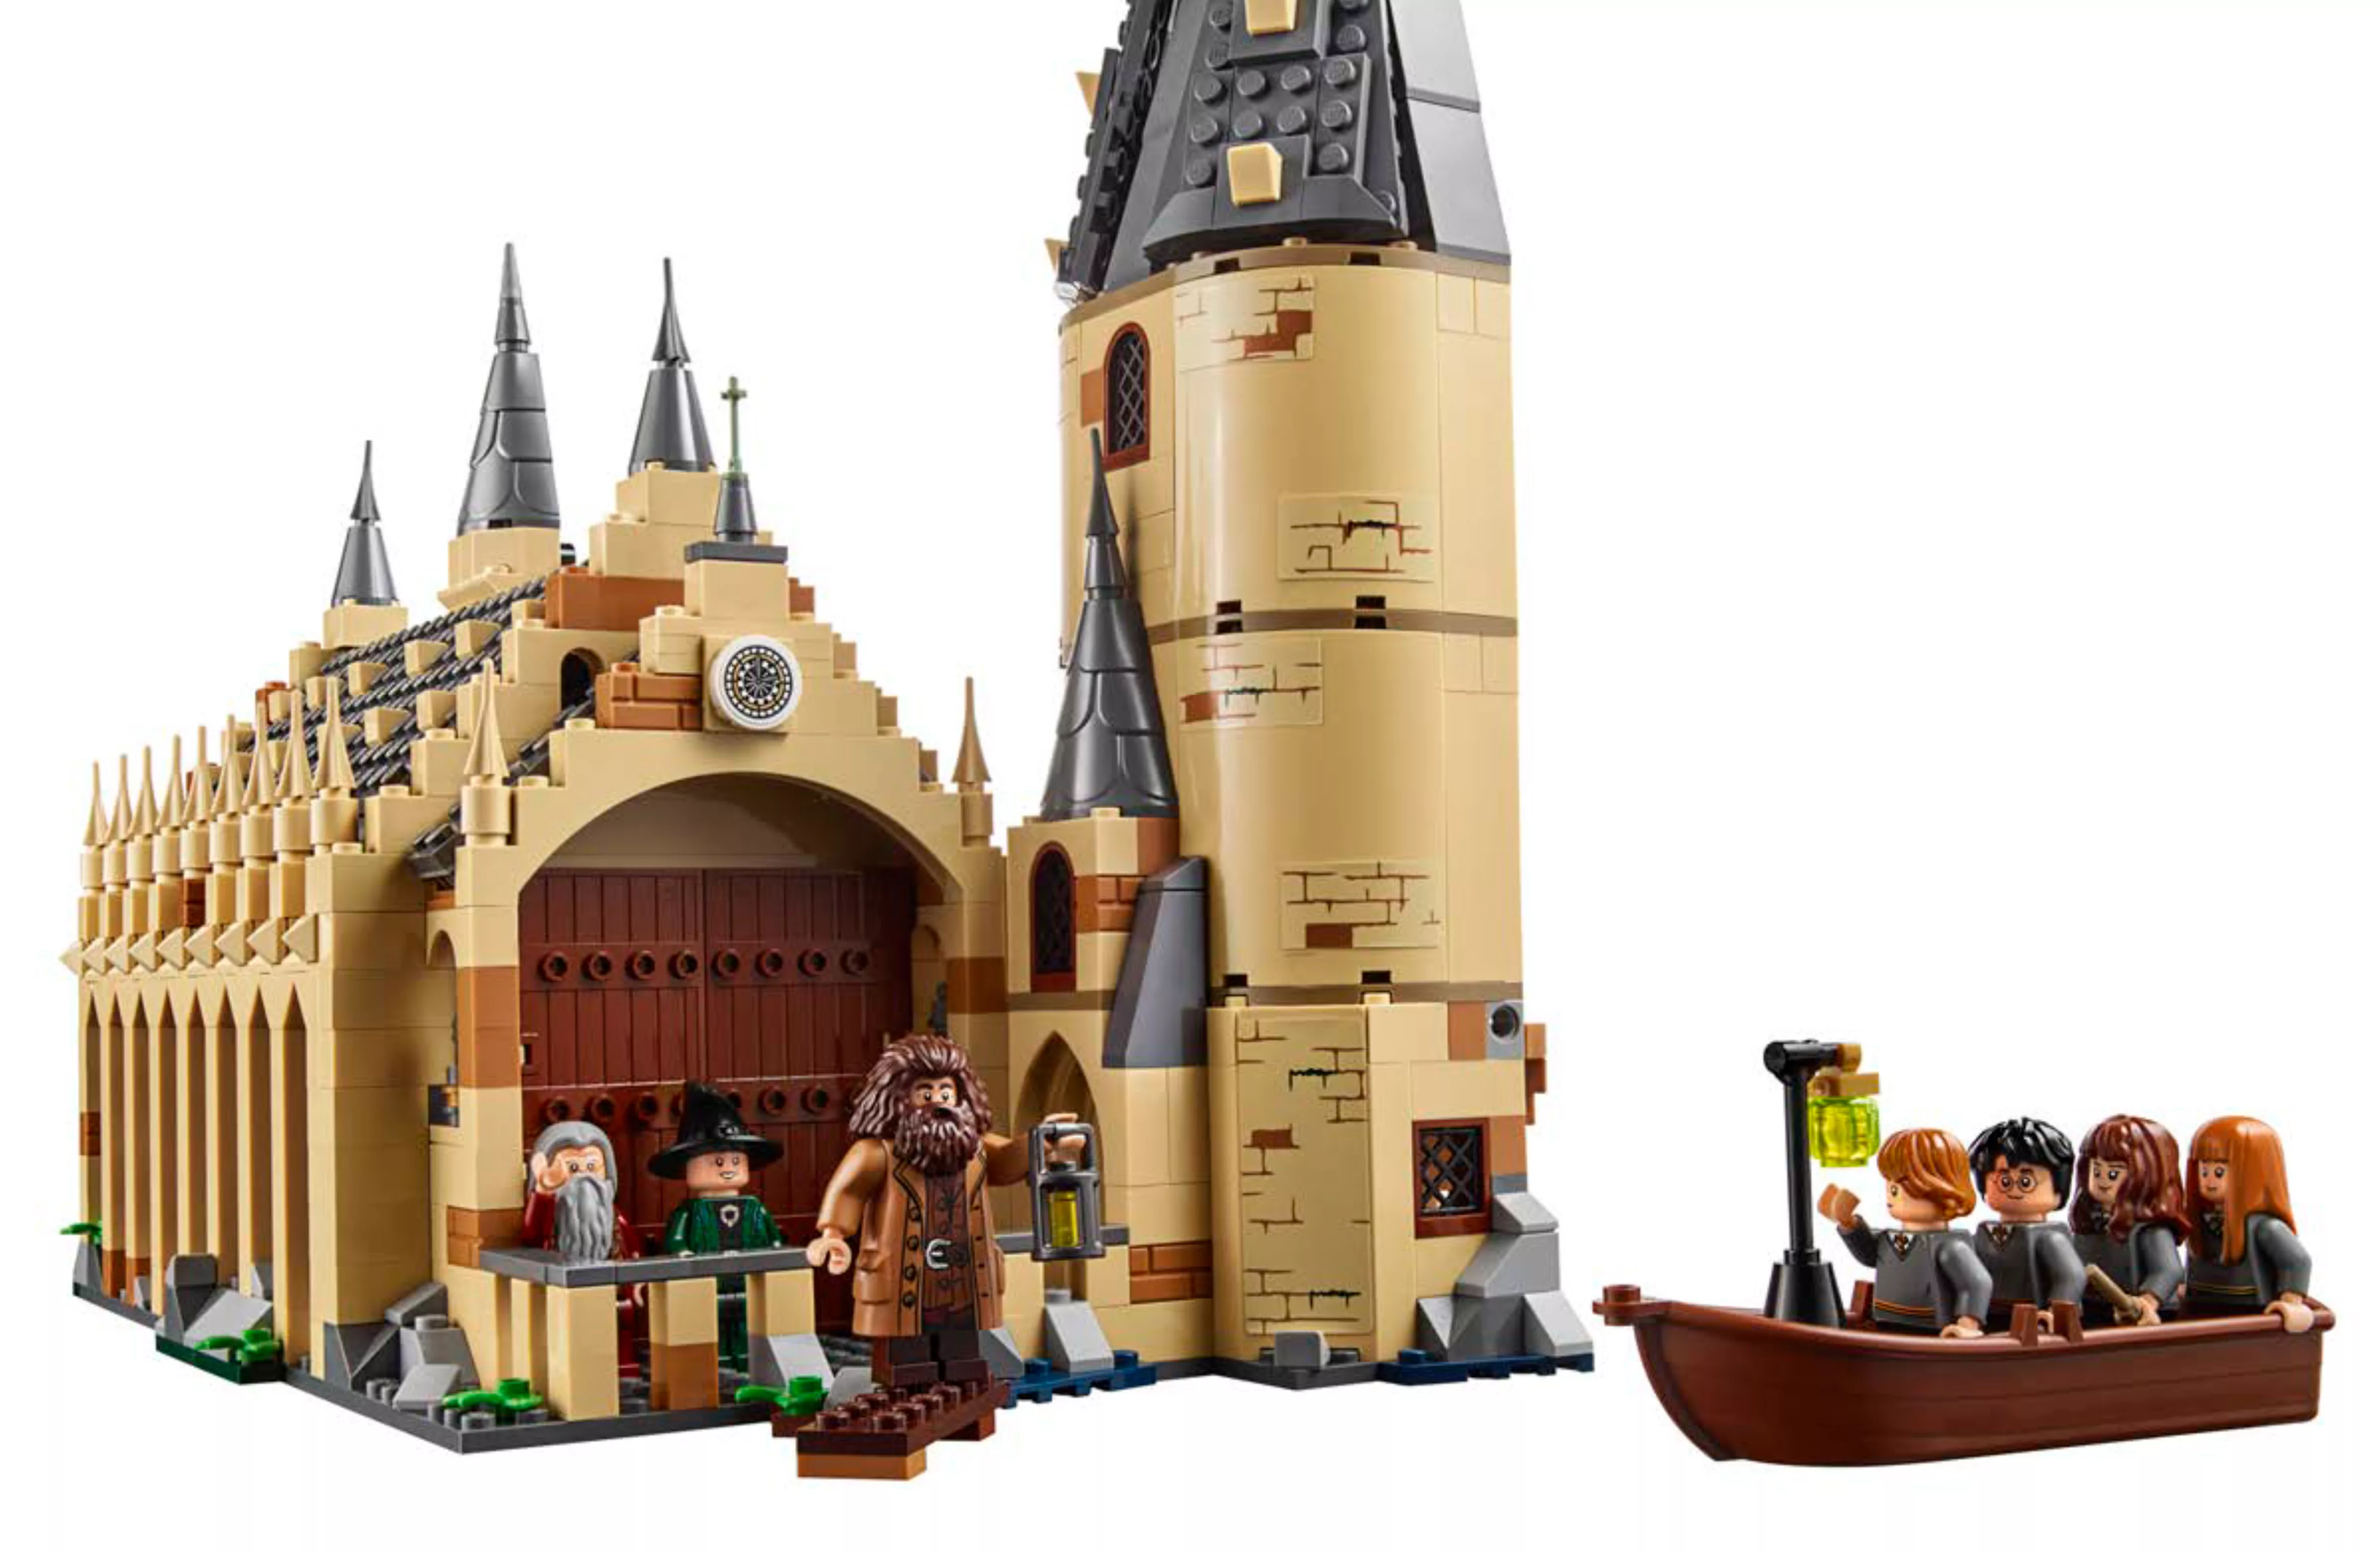 LEGO HARRY POTTER HOGWARTS CASTLE - Where World of Magic